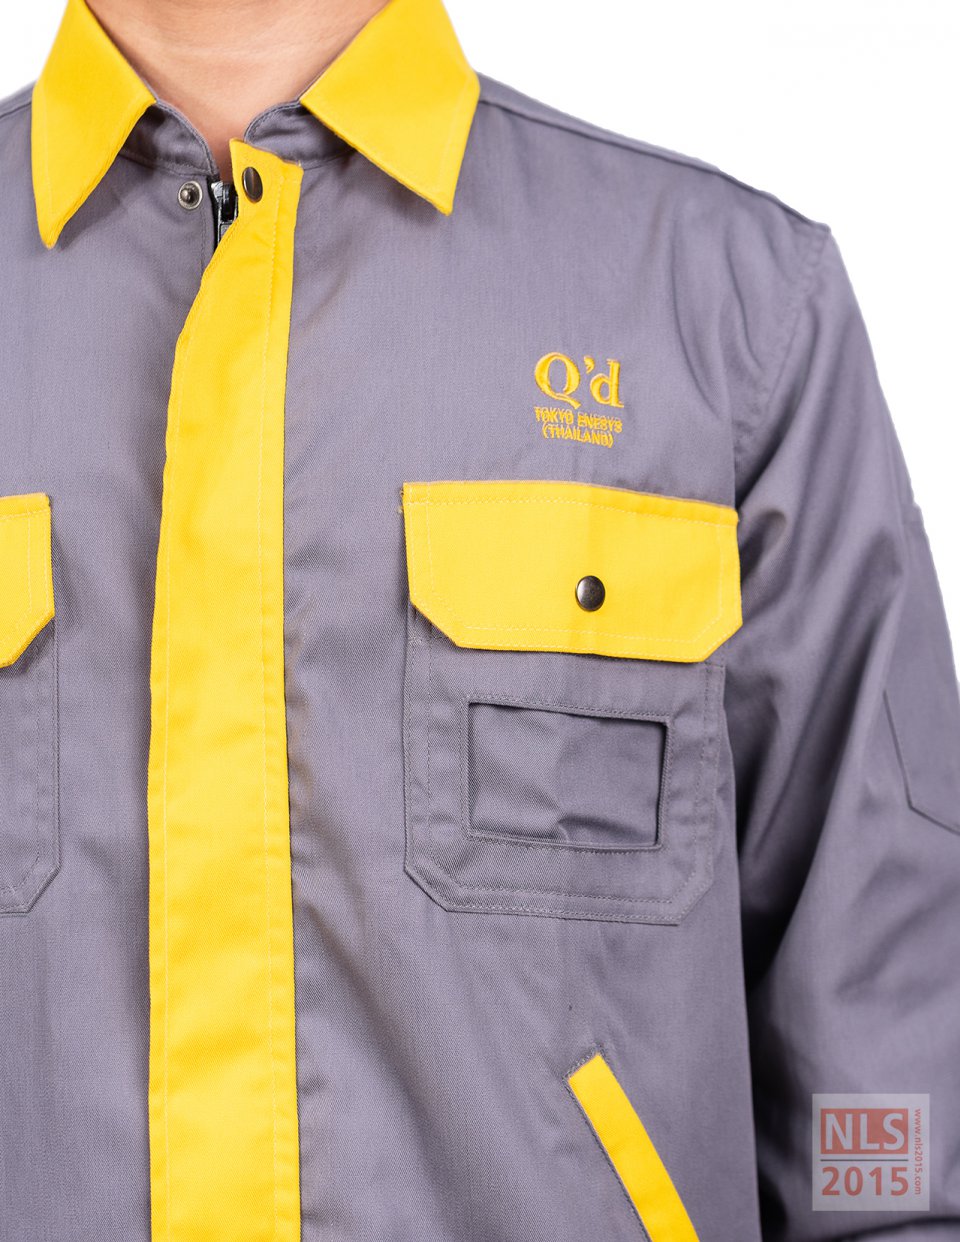 แบบยูนิฟอร์มพนักงานบริษัท Qd Tokyo Enesys (Thailand) /นลินสิริ 2015 โรงงานผลิตชุด Uniform พนักงานรูปที่ 